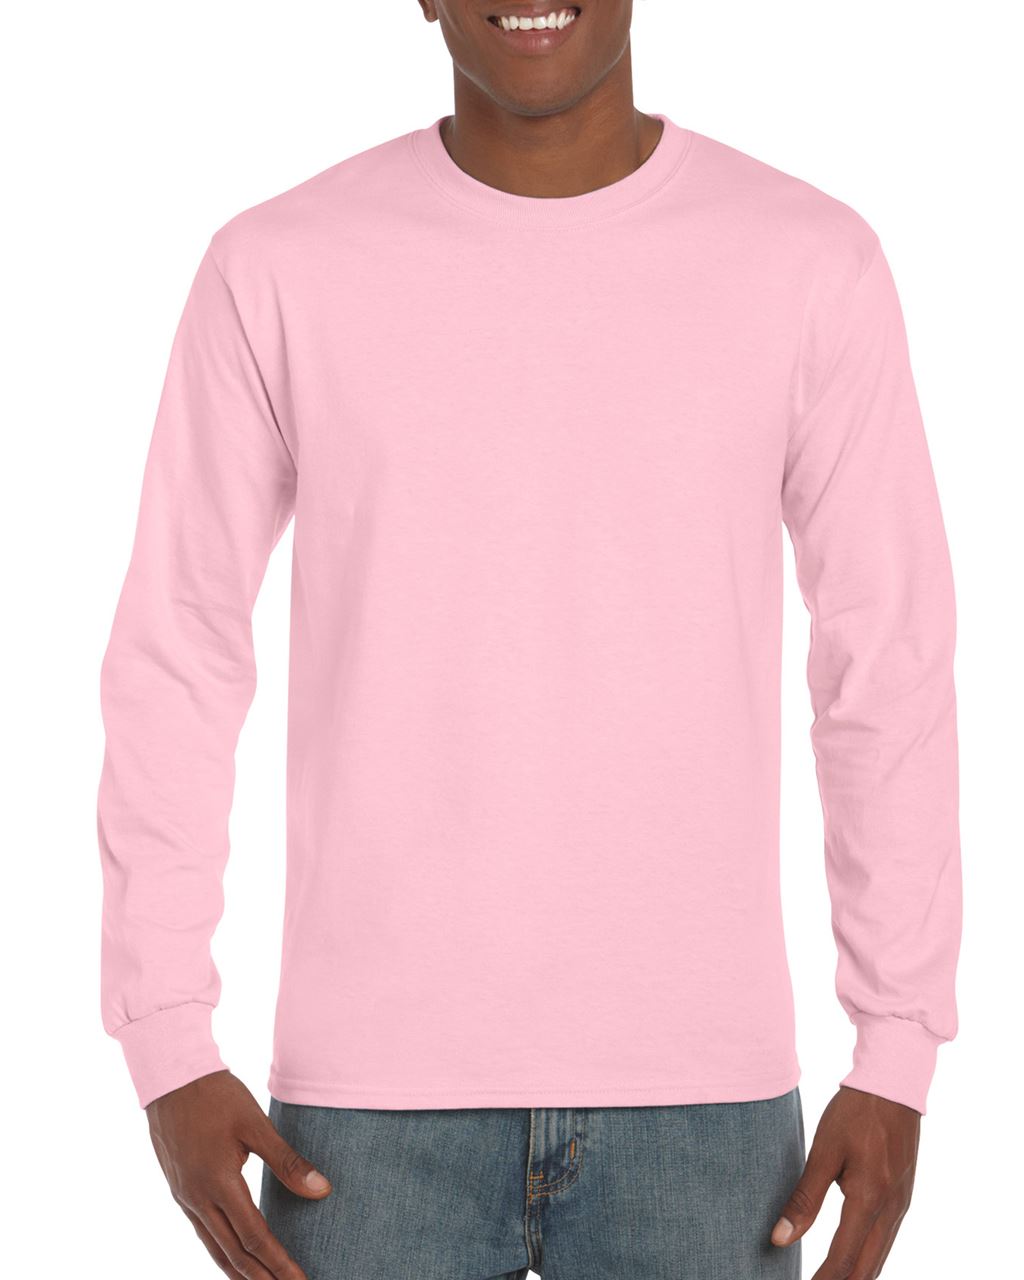 Gildan Ultra Cotton™ Adult Long Sleeve T-shirt - Gildan Ultra Cotton™ Adult Long Sleeve T-shirt - Light Pink